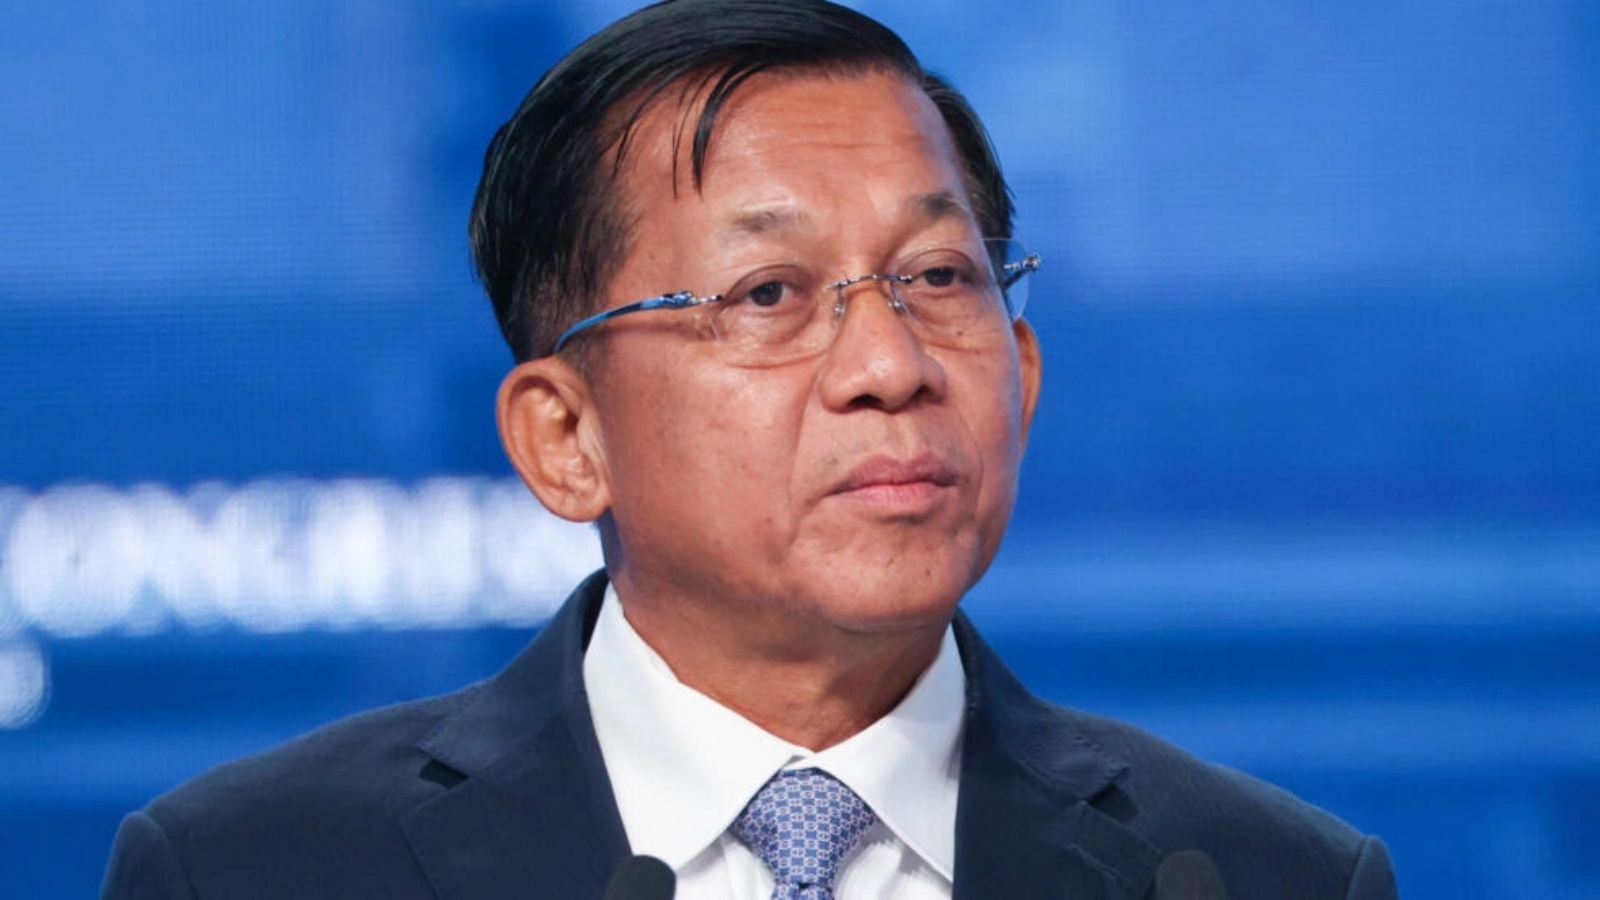 زعيم المجموعة العسكرية الحاكمة في بورما مين أونغ هلاينغ خلال مشاركته في منتدى اقتصادي في فلاديفوستوك في 7 سبتمبر 2022 